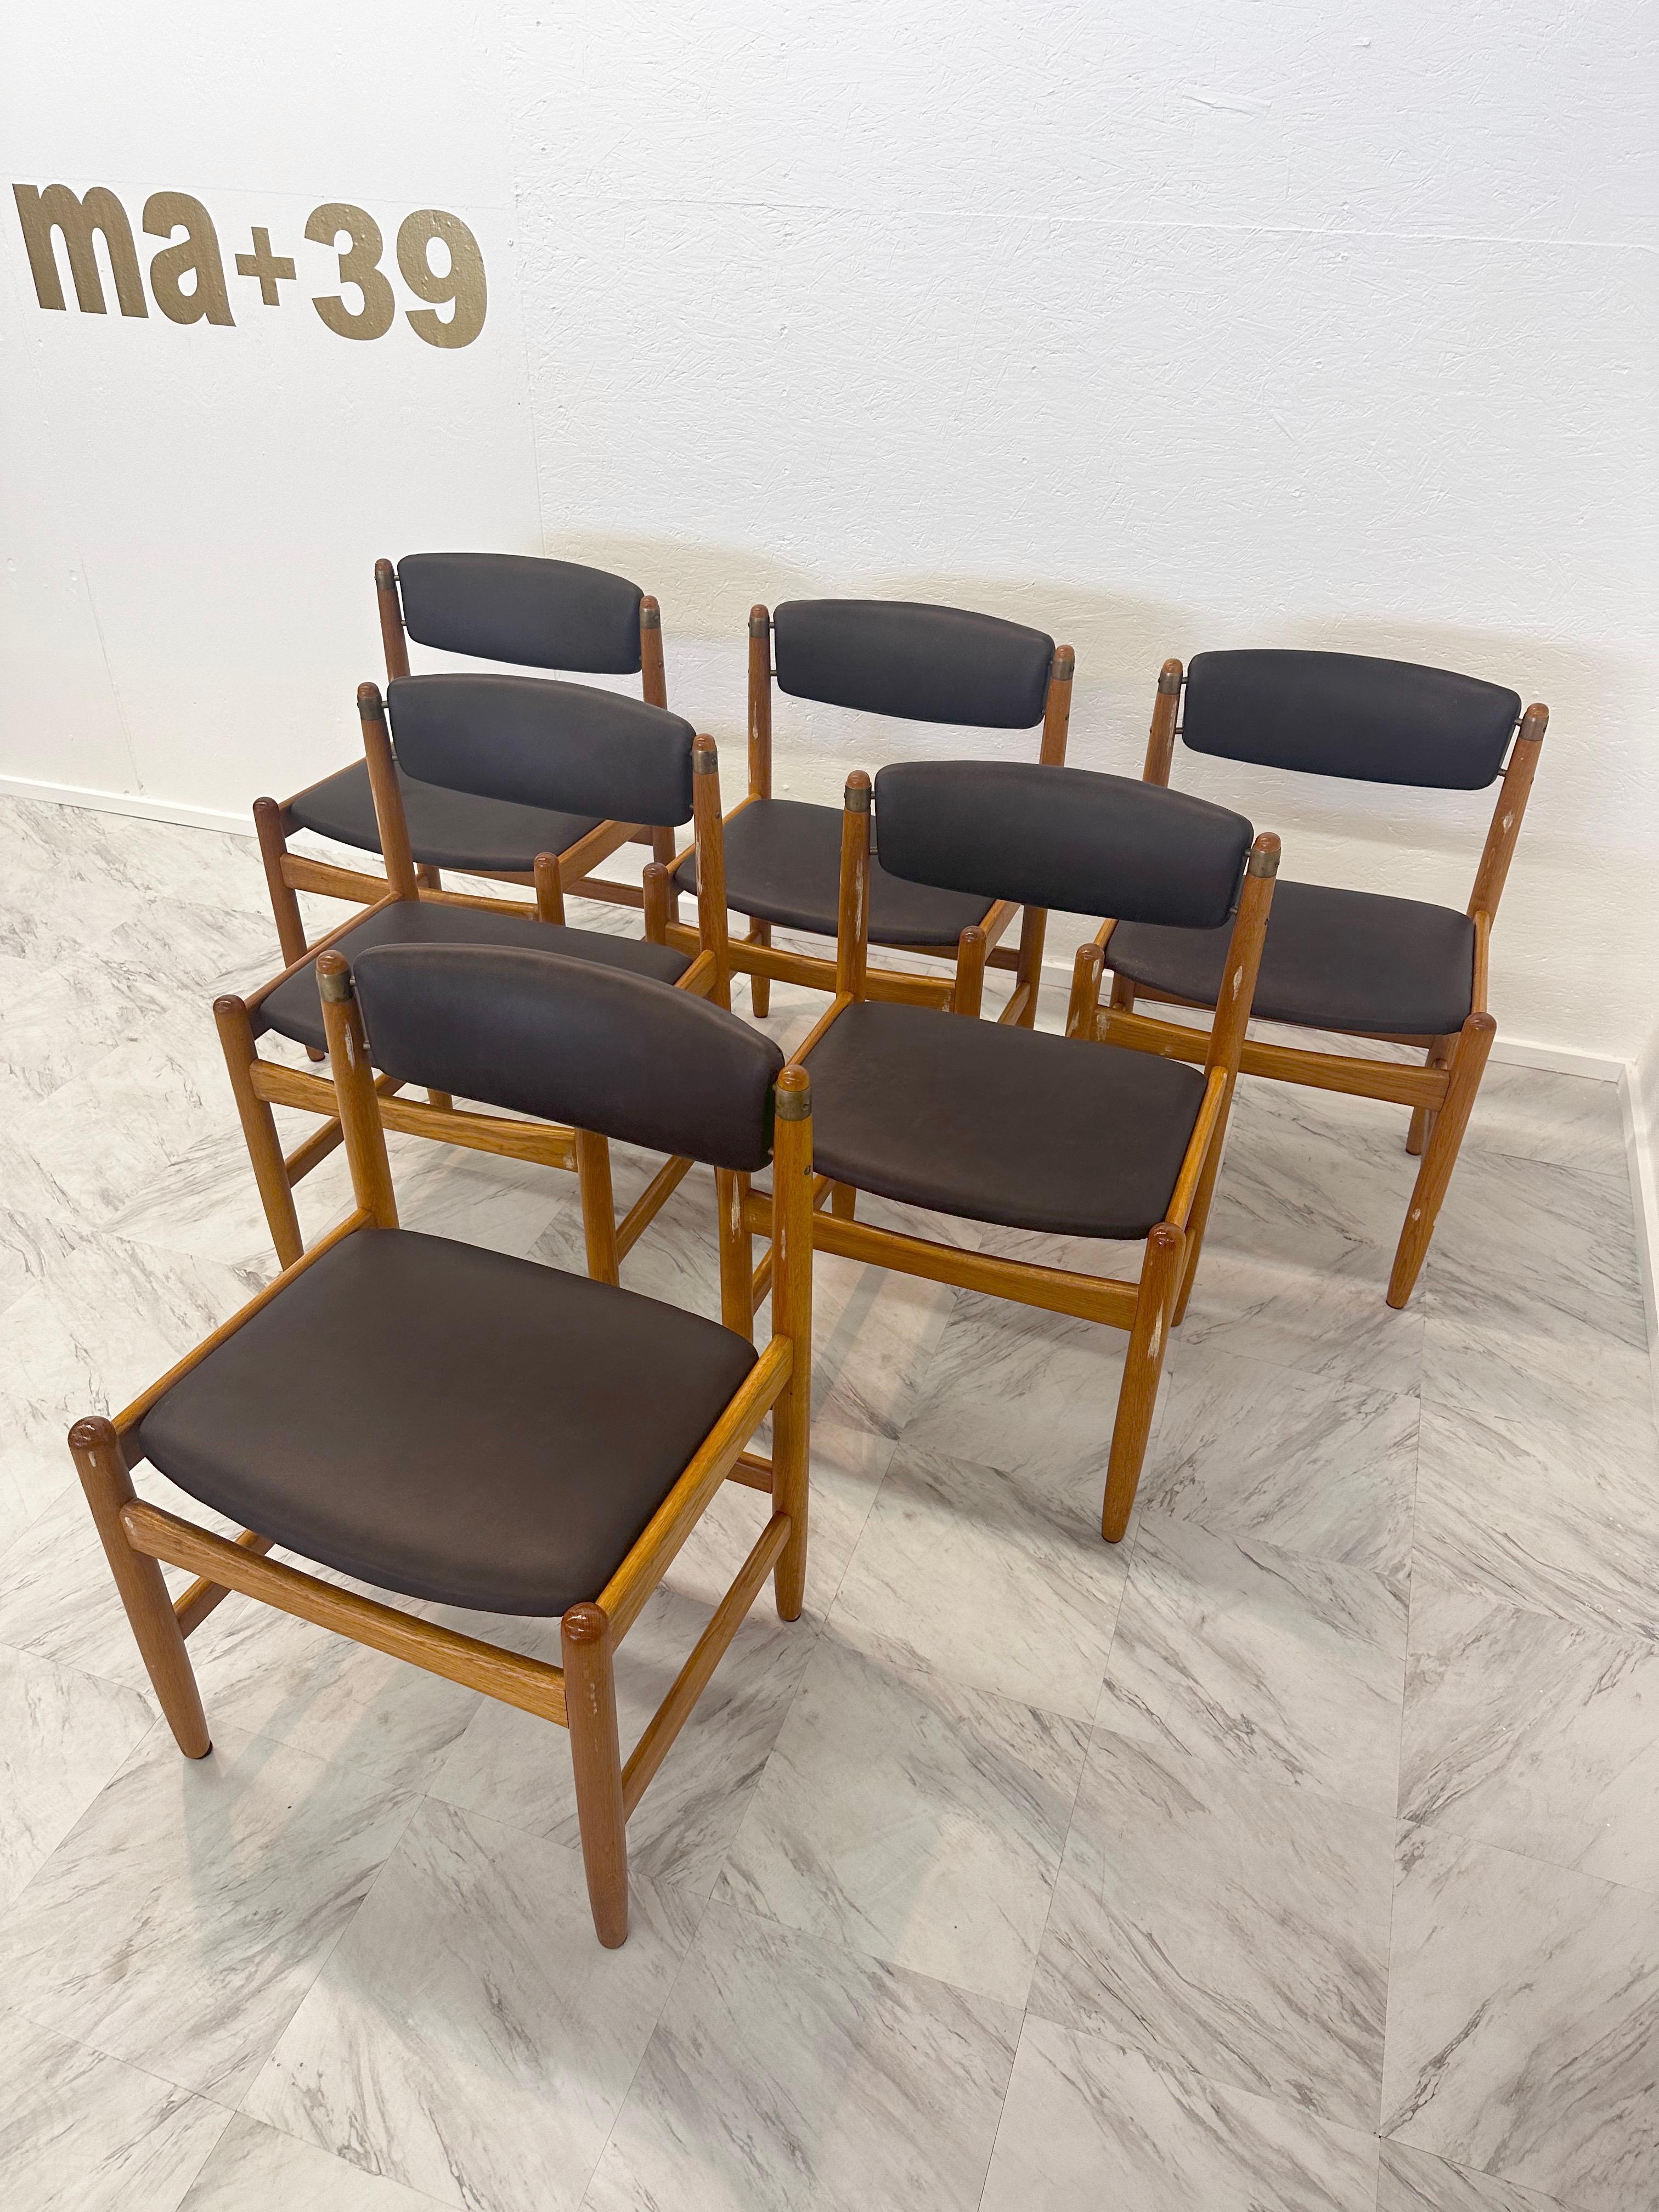 Cet ensemble de 6 chaises Design/One modèle 537 a été conçu par Borg Mogensen pour Karl Andersson & Söner. Il est produit depuis 1955. Ces chaises datent de la première période de production. Le design s'inspire du mobilier américain Shakers. Ces